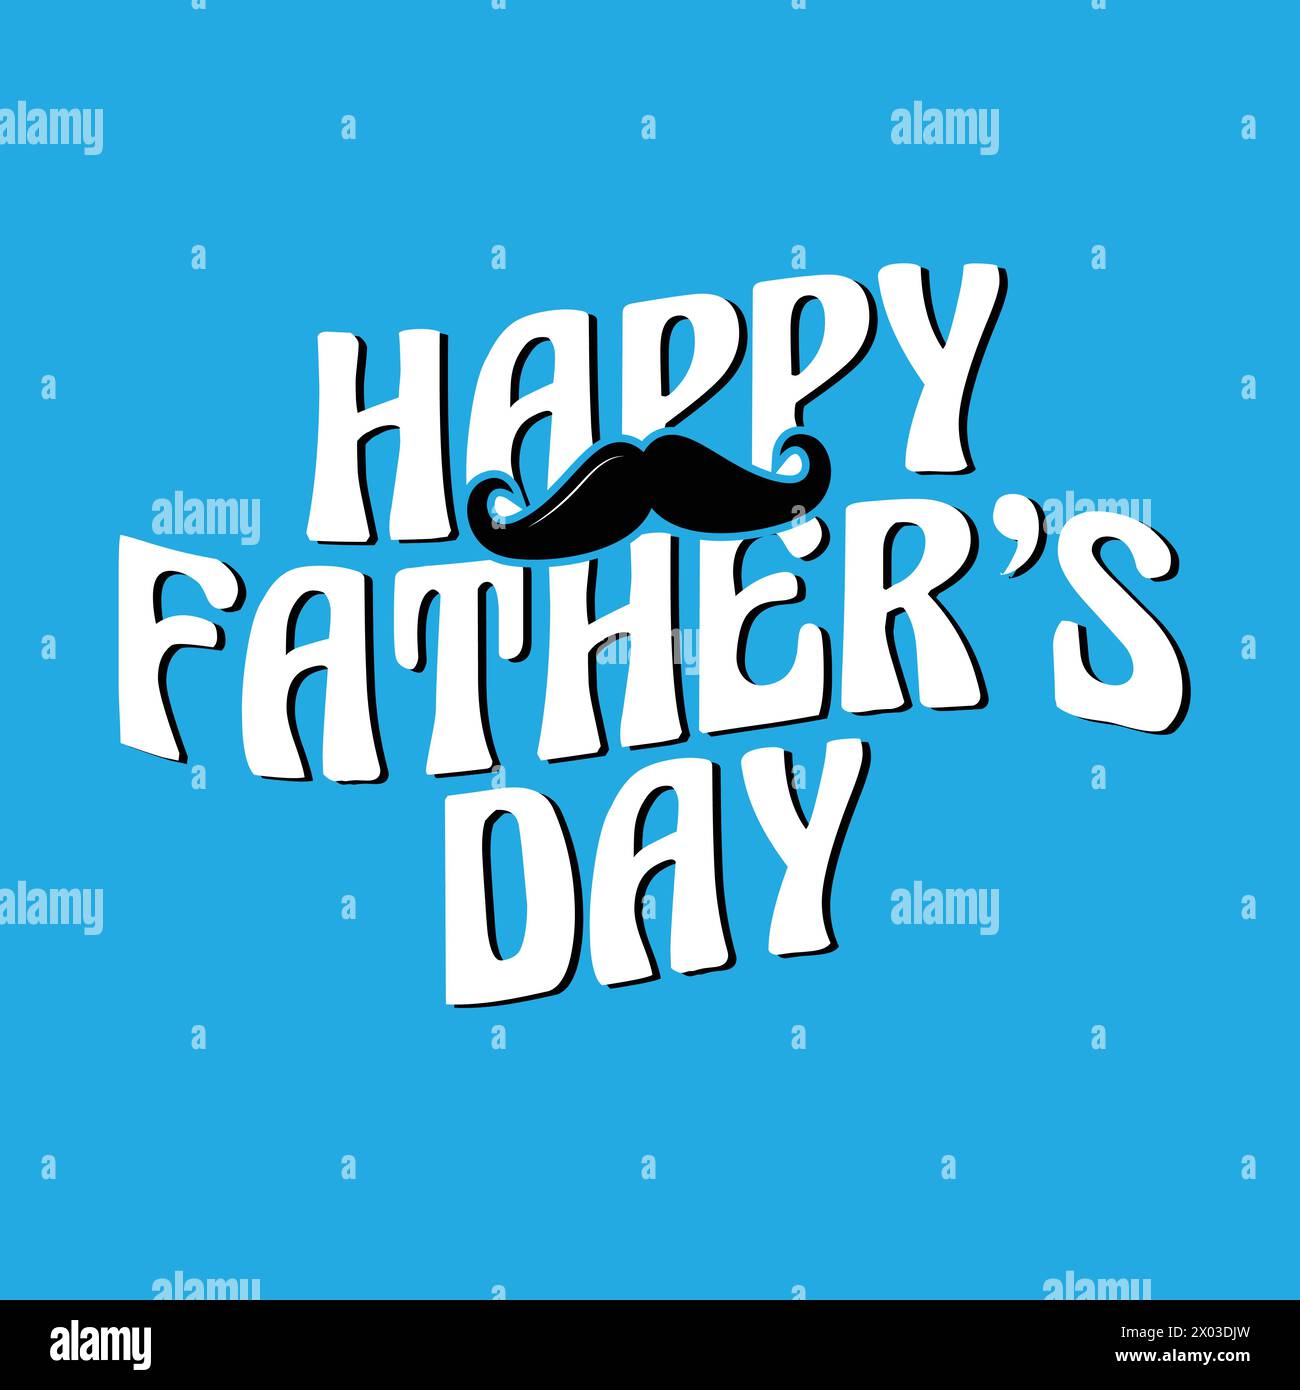 Glückliche Vatertag-Text-Vektor-Illustration. Handgezeichneter Schriftzug zur Feier des Vatertags. Vatertag-Grußkarte, soziale Medien Stock Vektor